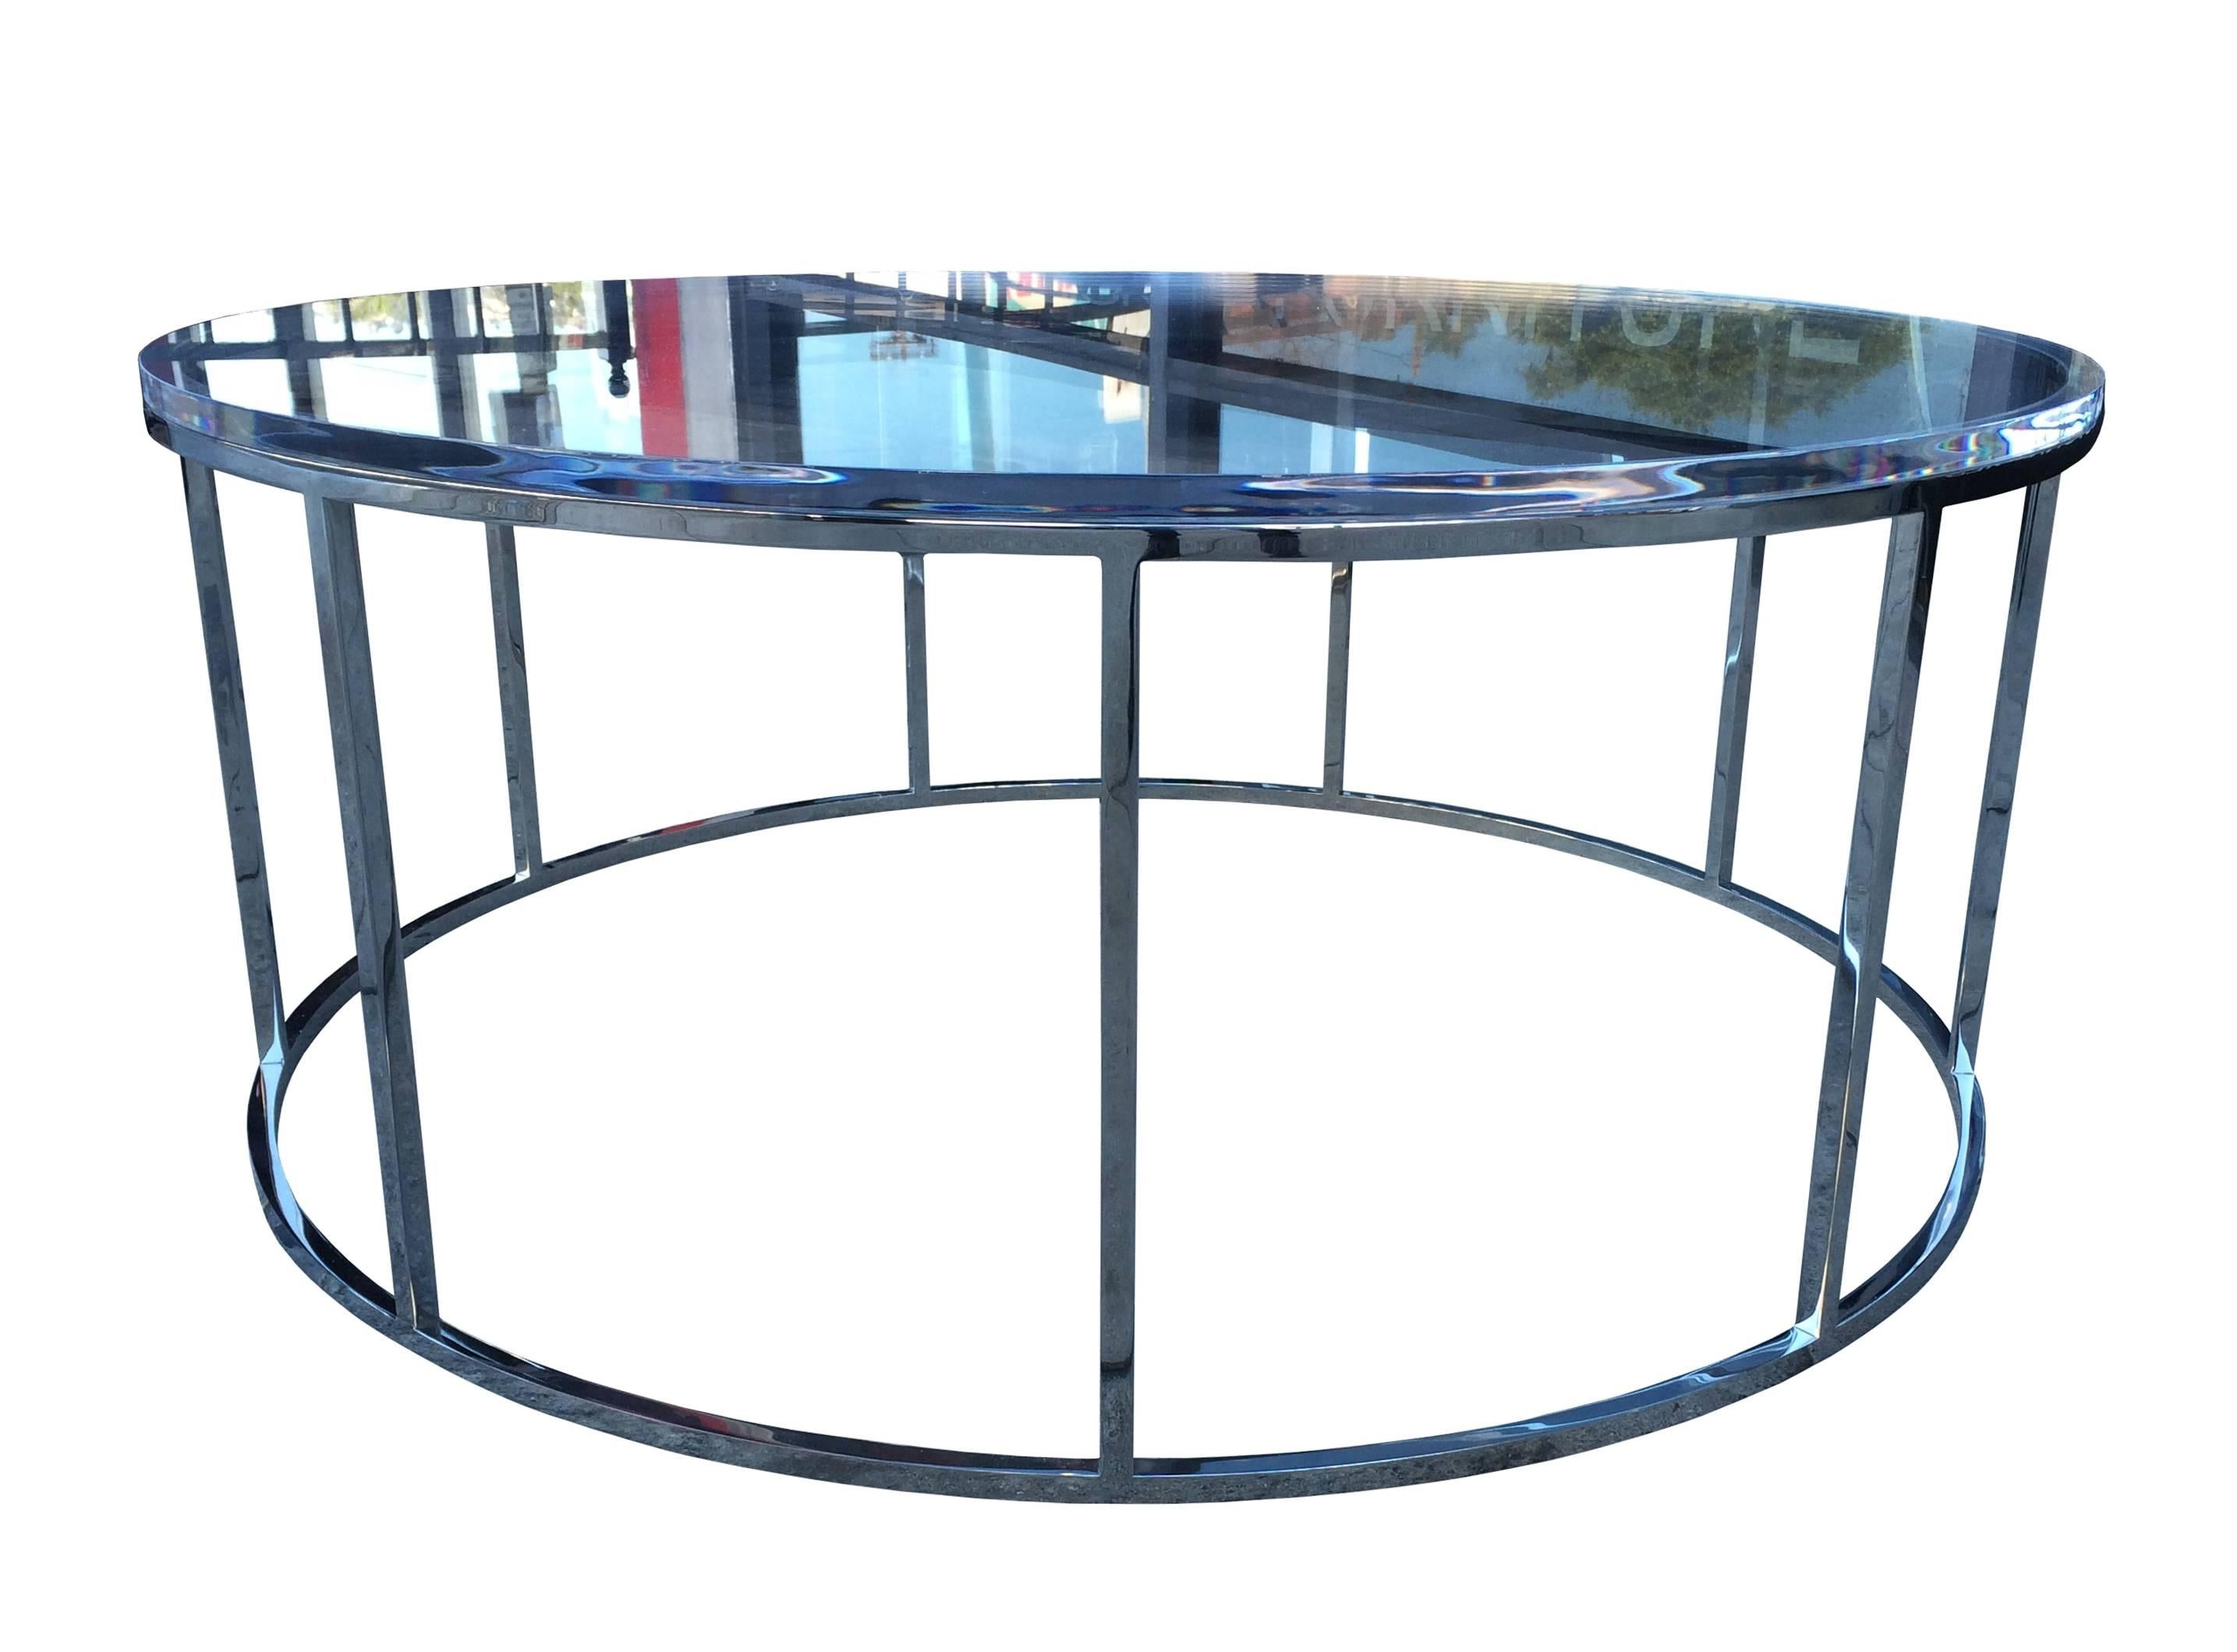 Les styles minimaliste et fantaisiste décrivent le mieux cette table basse, exécutée en acier inoxydable avec une finition polie et surmontée d'un plateau en Lucite de 1